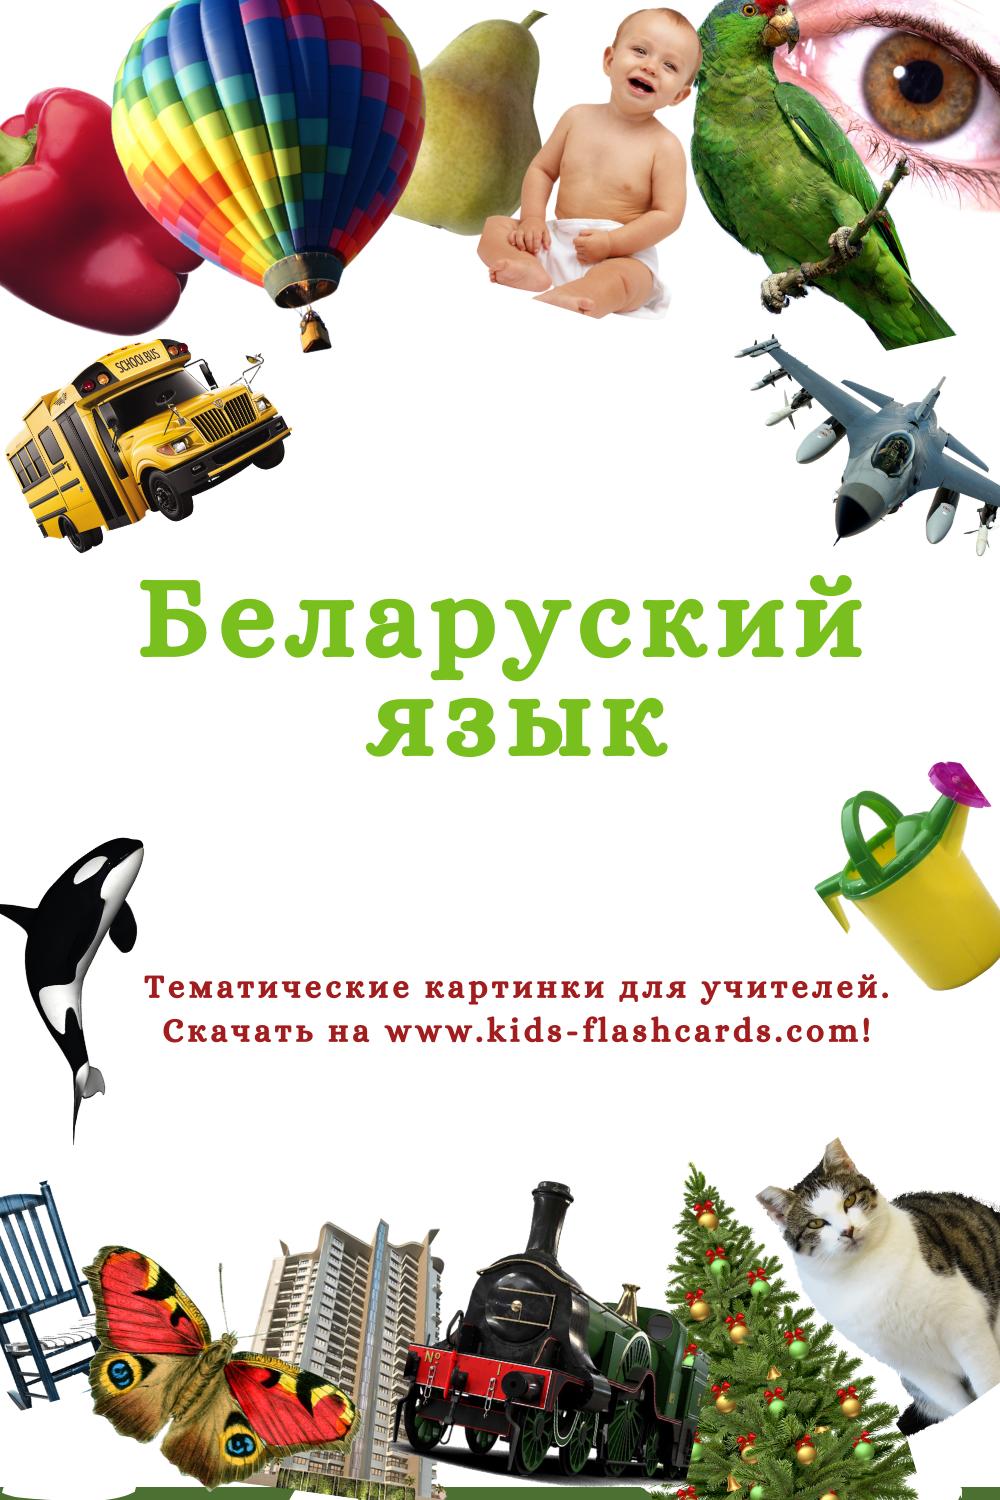 Беларуский язык - распечатки для детей